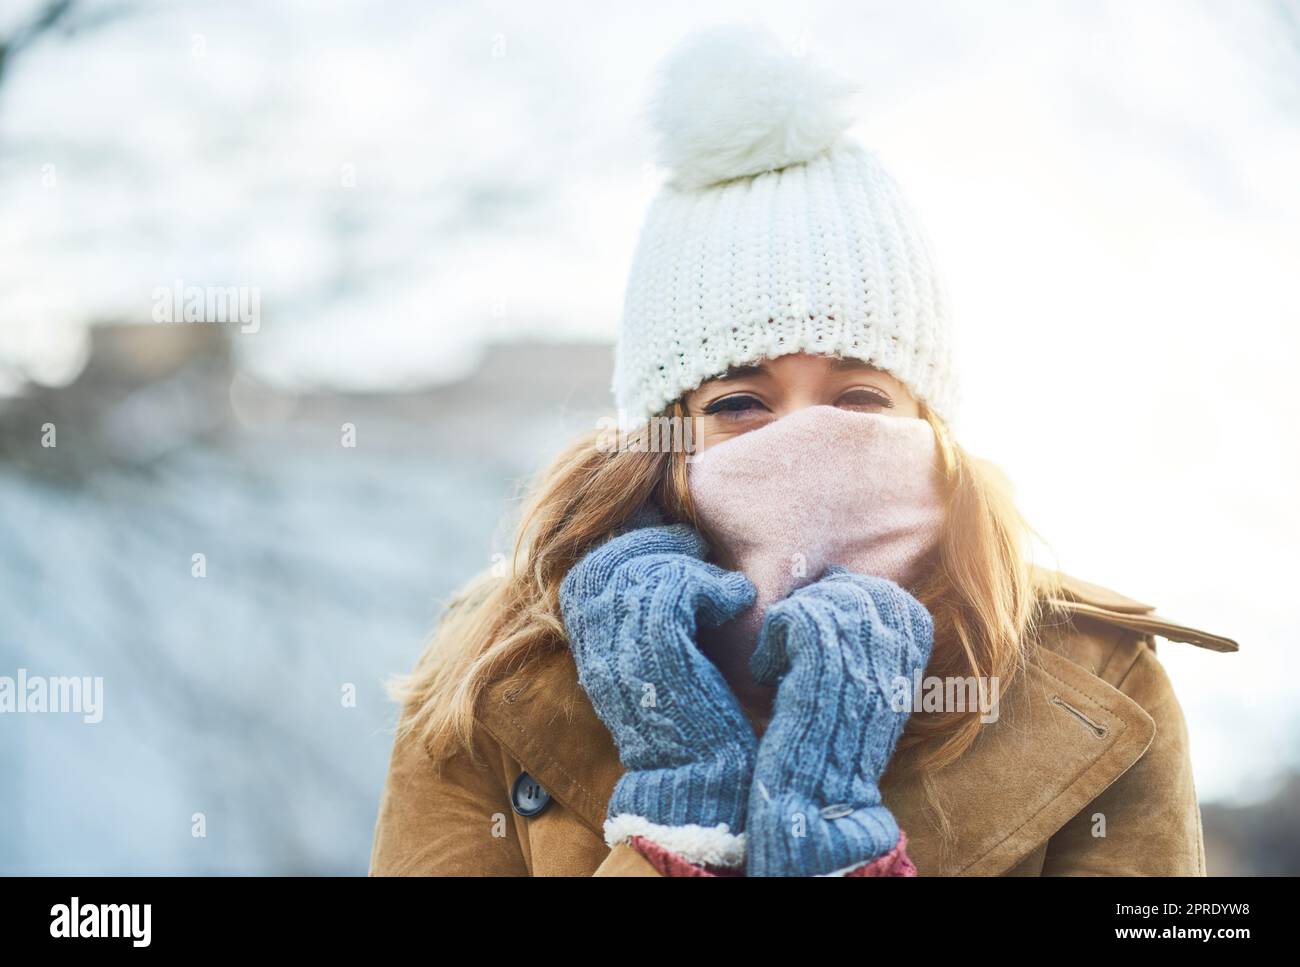 Im sentirsi coperto e caldo, ora di godere la neve. Una giovane donna attraente godendo di essere fuori nella neve. Foto Stock